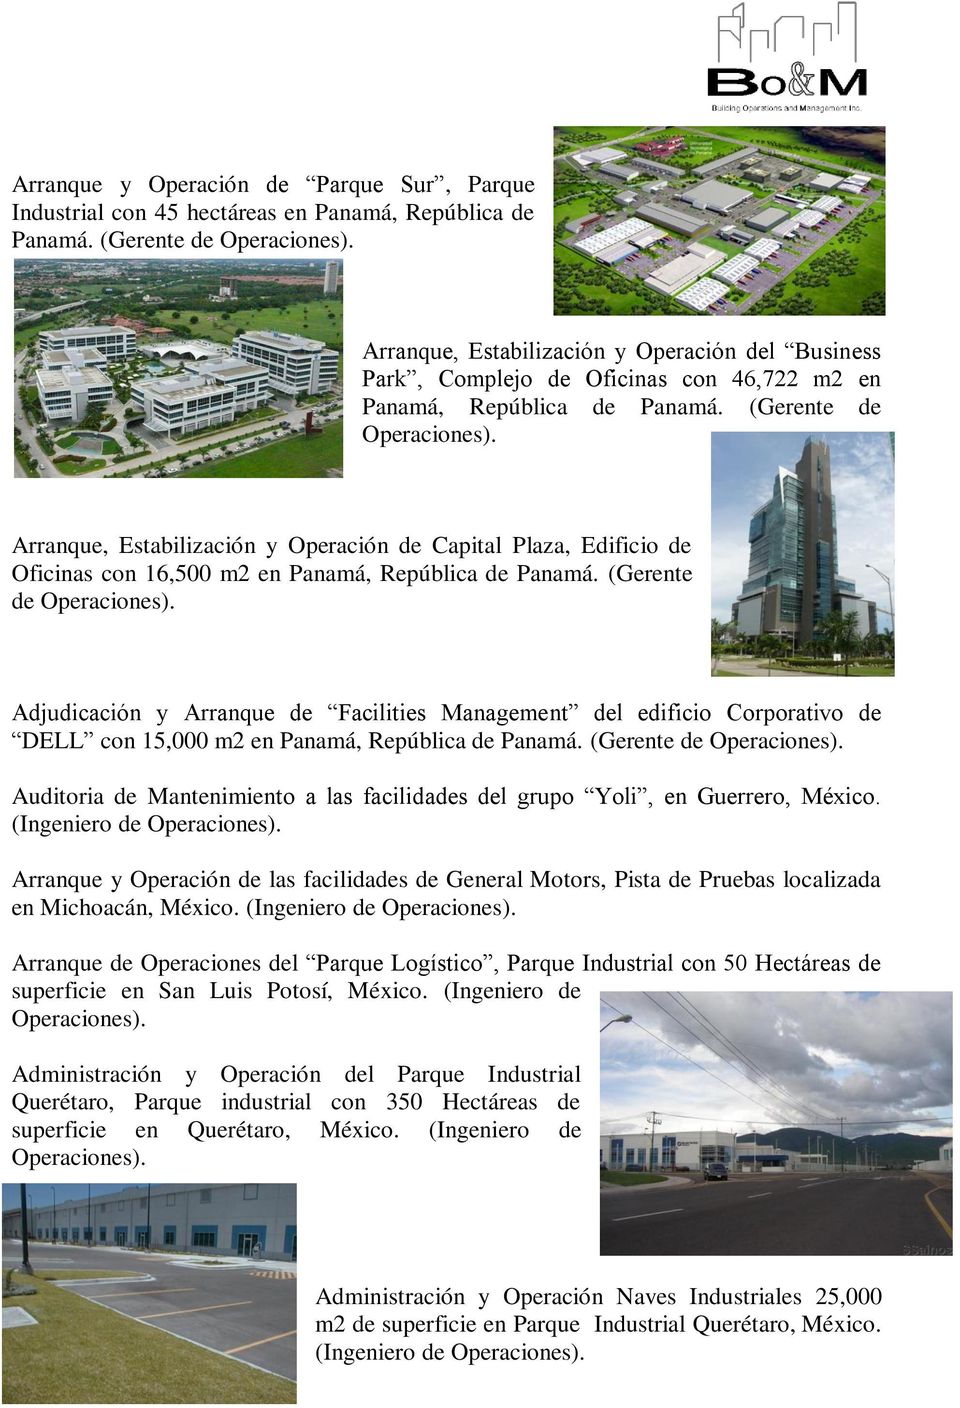 Arranque, Estabilización y Operación de Capital Plaza, Edificio de Oficinas con 16,500 m2 en Panamá, República de Panamá. (Gerente de Operaciones).